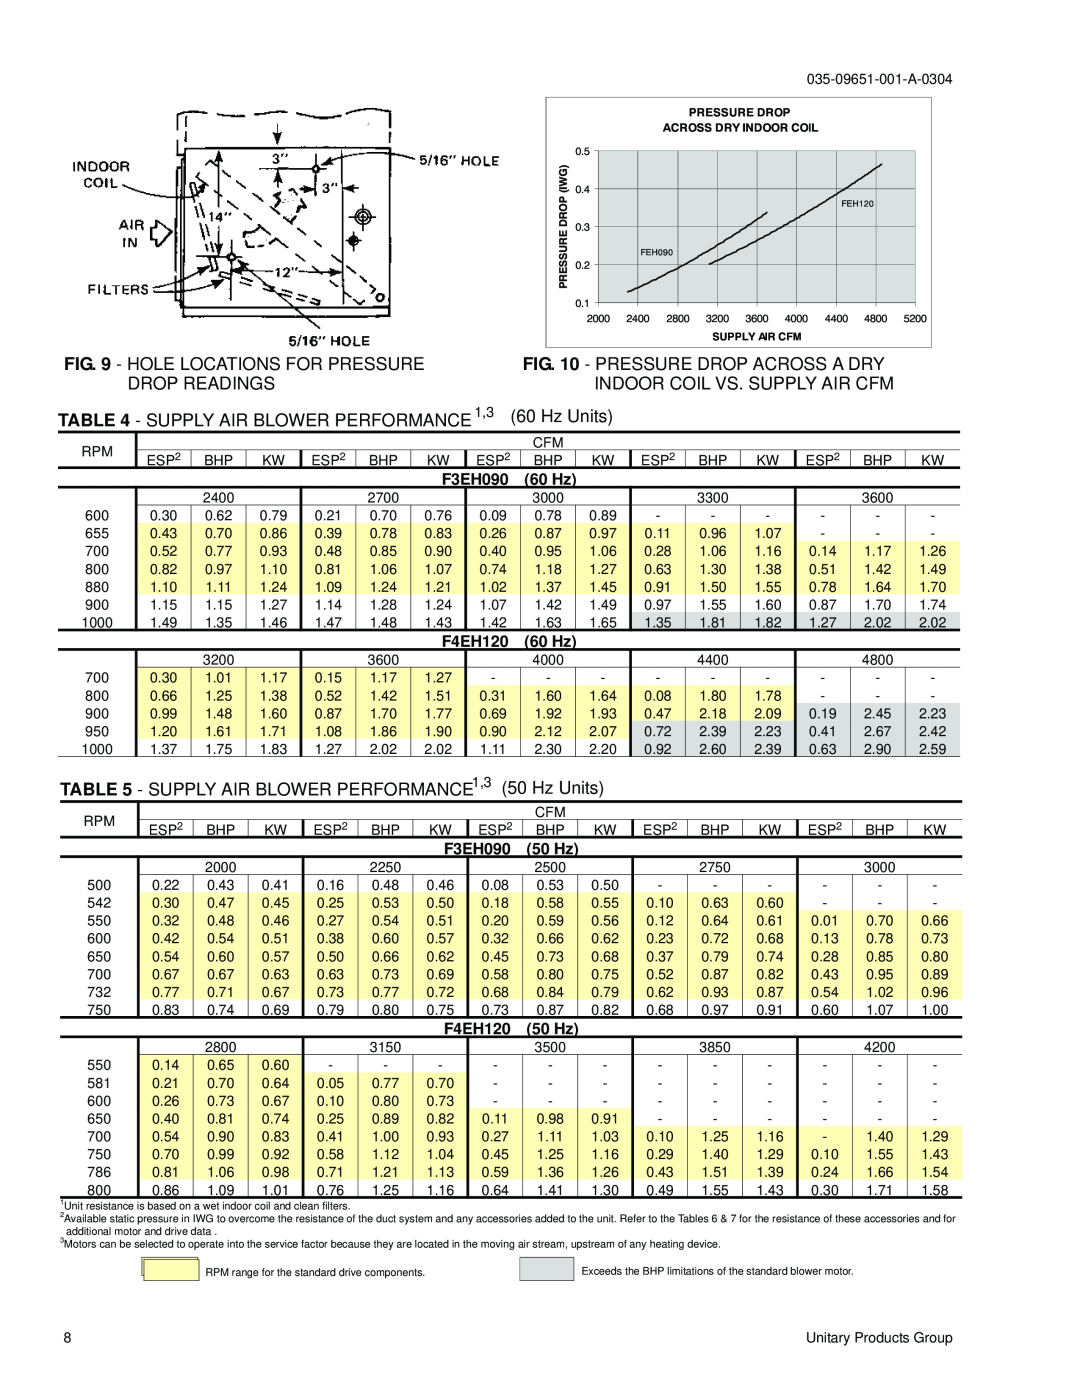 York F3EH090 SUPPLY AIR BLOWER PERFORMANCE 1,3, Hz Units, 60 Hz, F4EH120, 50 Hz, IWG0.4, 2400, 320036004000, 5200 